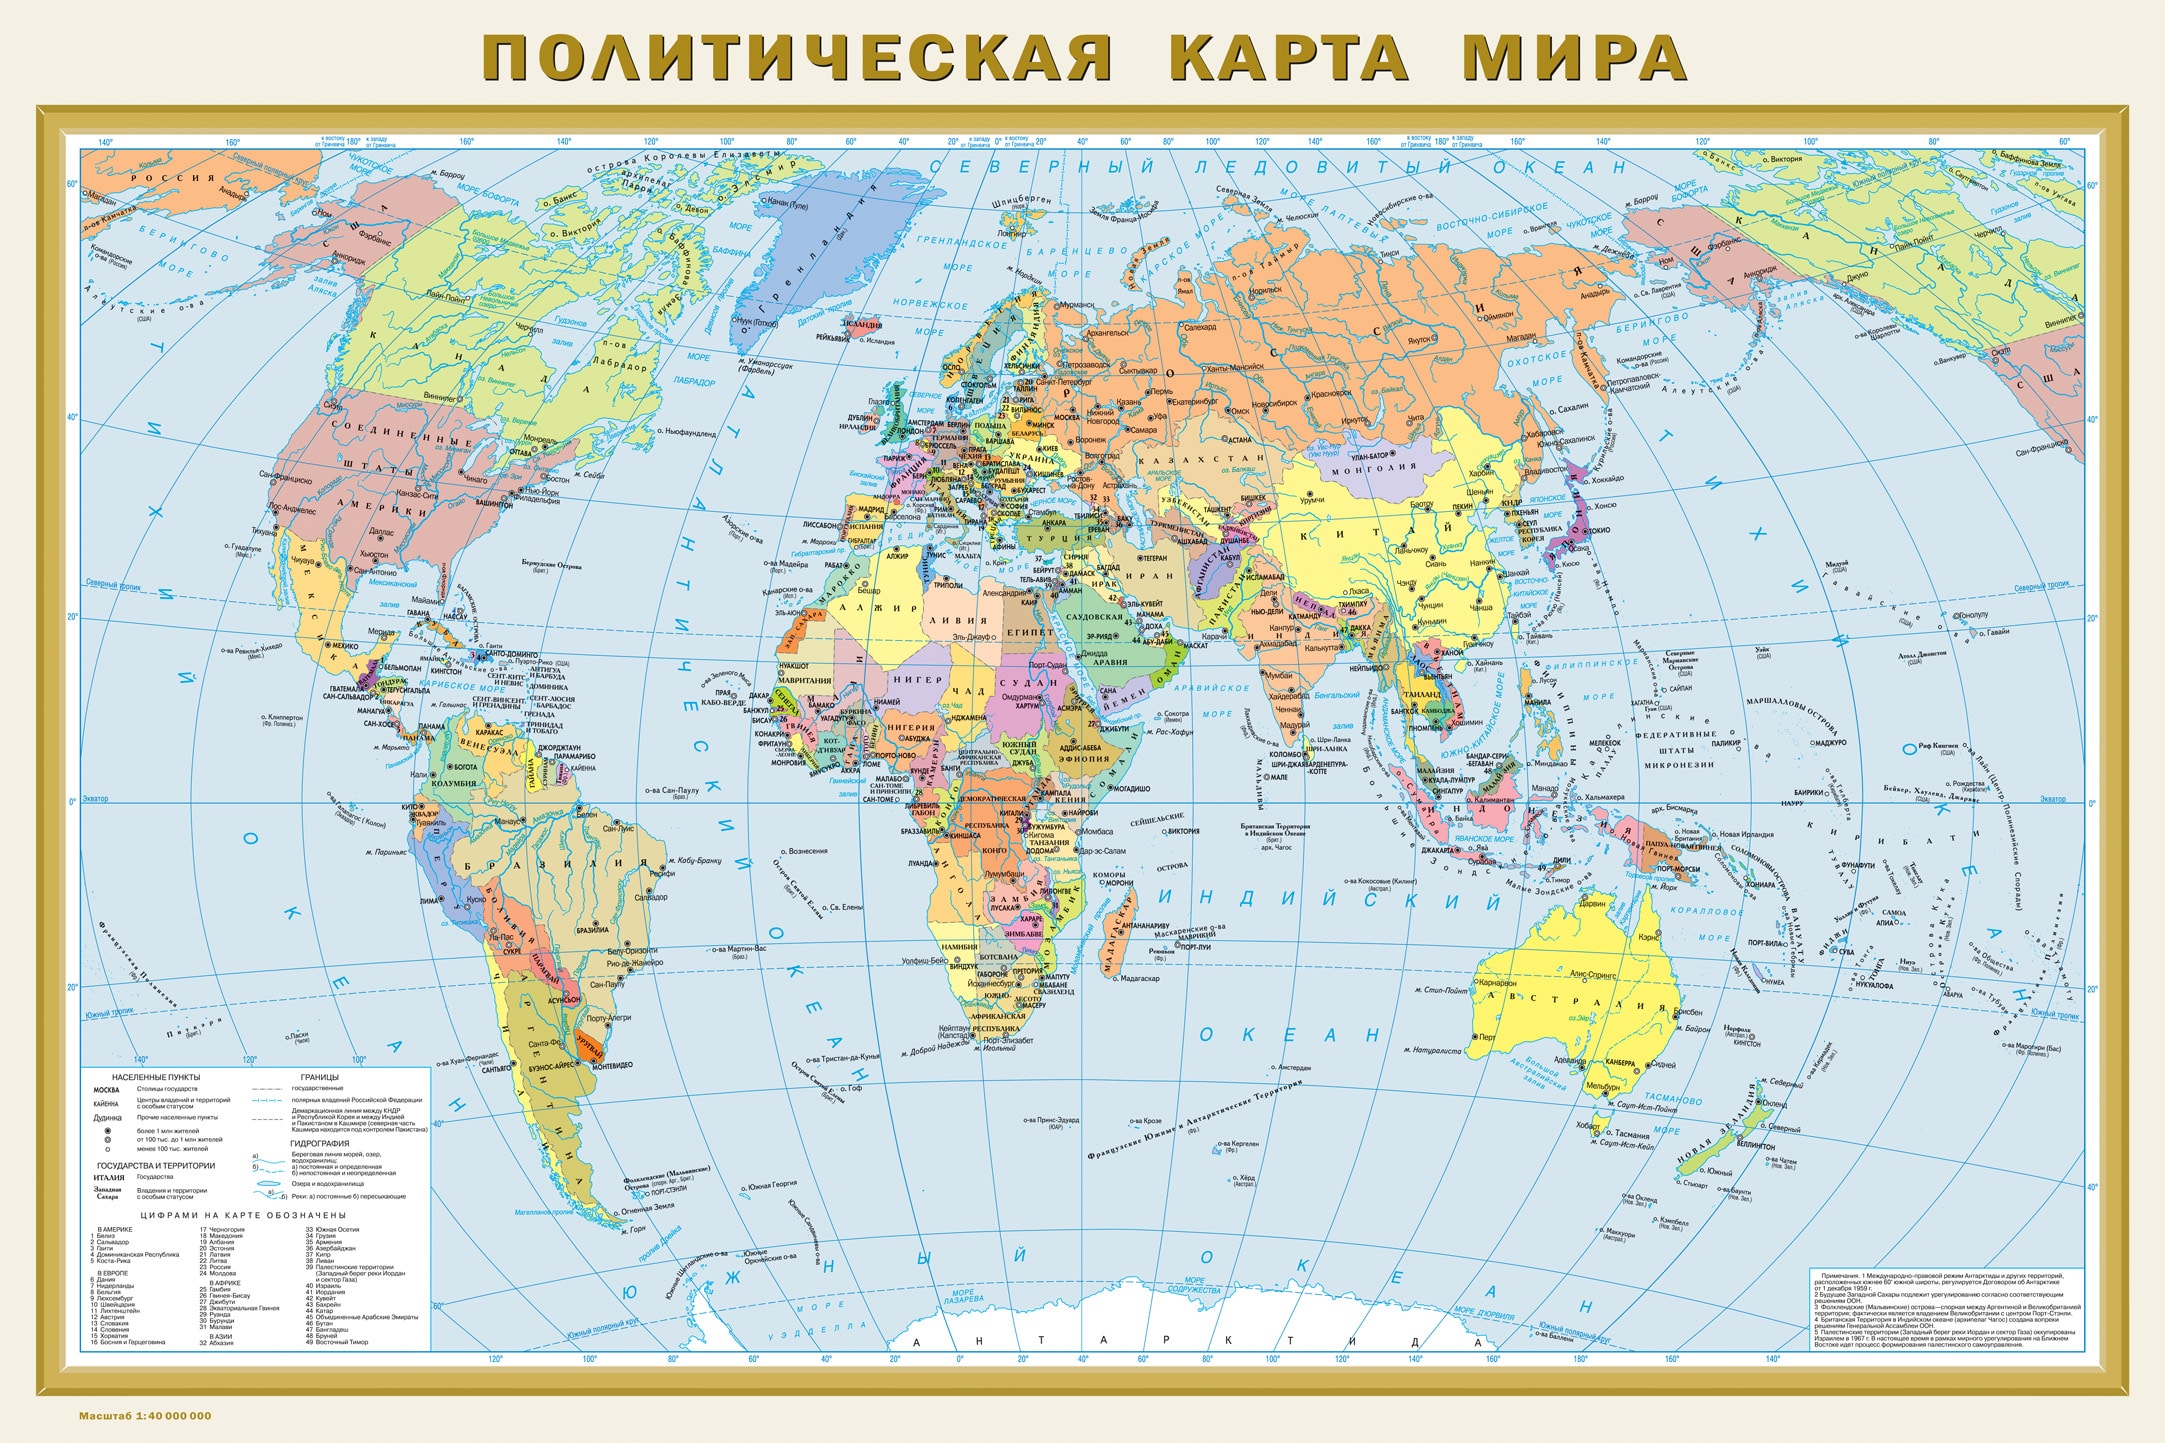 Политическая карта мира с увеличением масштаба